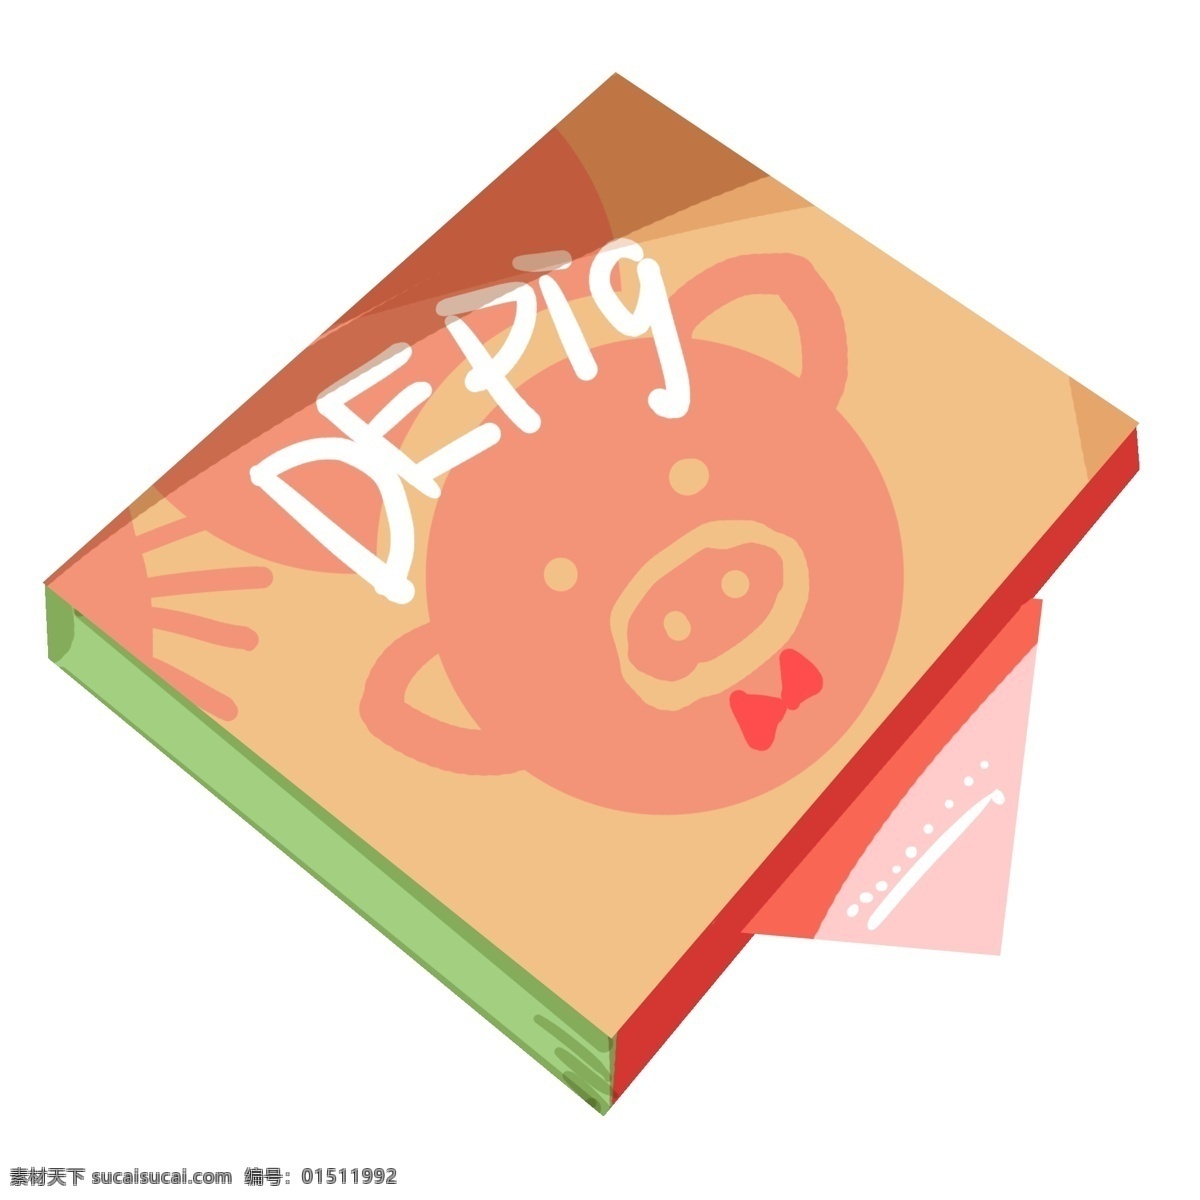 黄色 图案 盒子 插图 白色字母 红色图案 卡通小猪 小猪插图 红色蝴蝶结 正方形盒子 简约的盒子 立体盒子